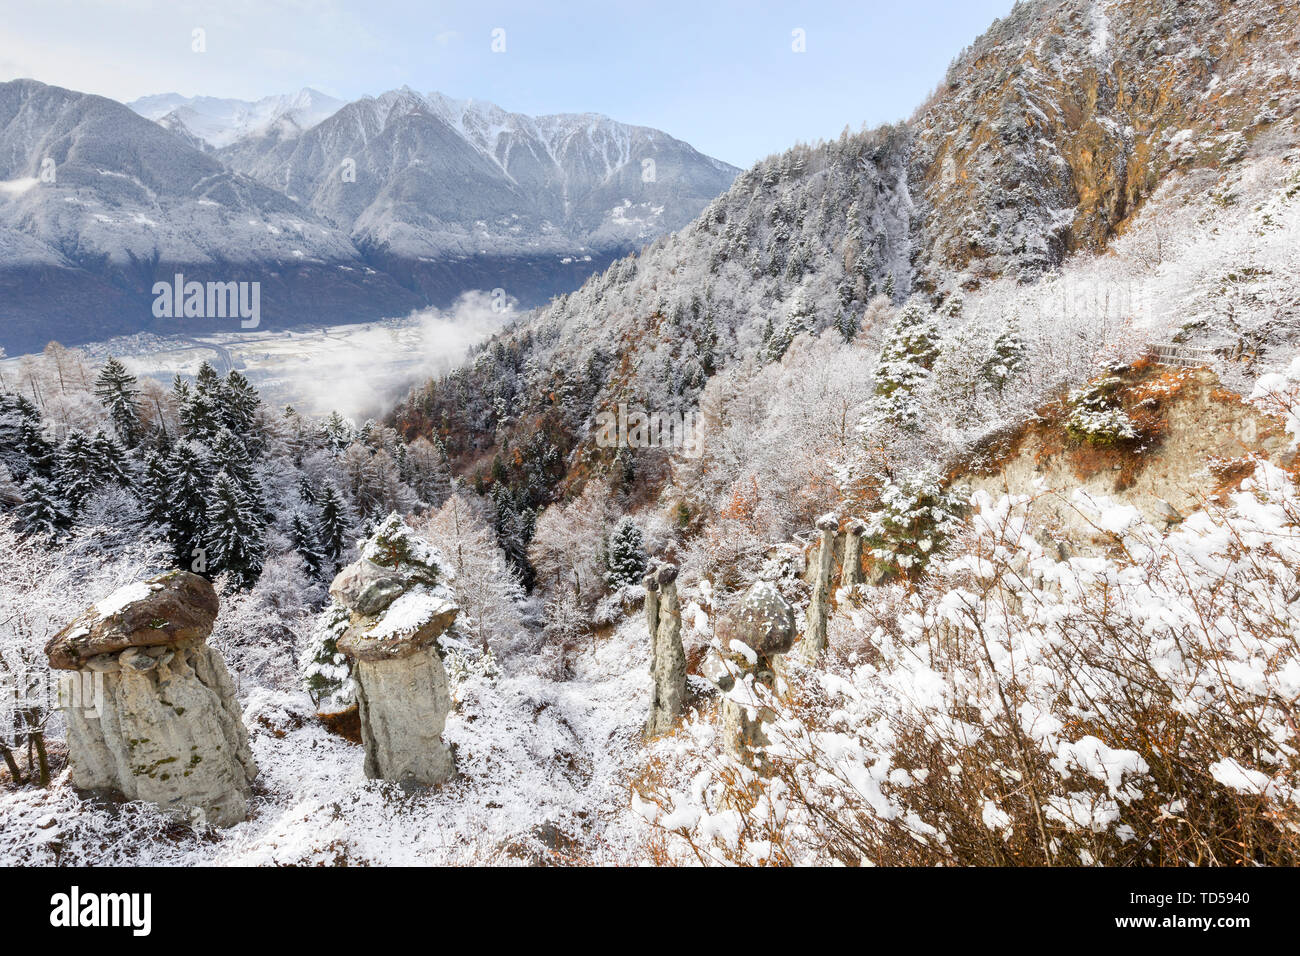 Hoodoos de Postalesio tras una nevada, Postalesio, Valtellina, Lombardía, Italia, Europa Foto de stock